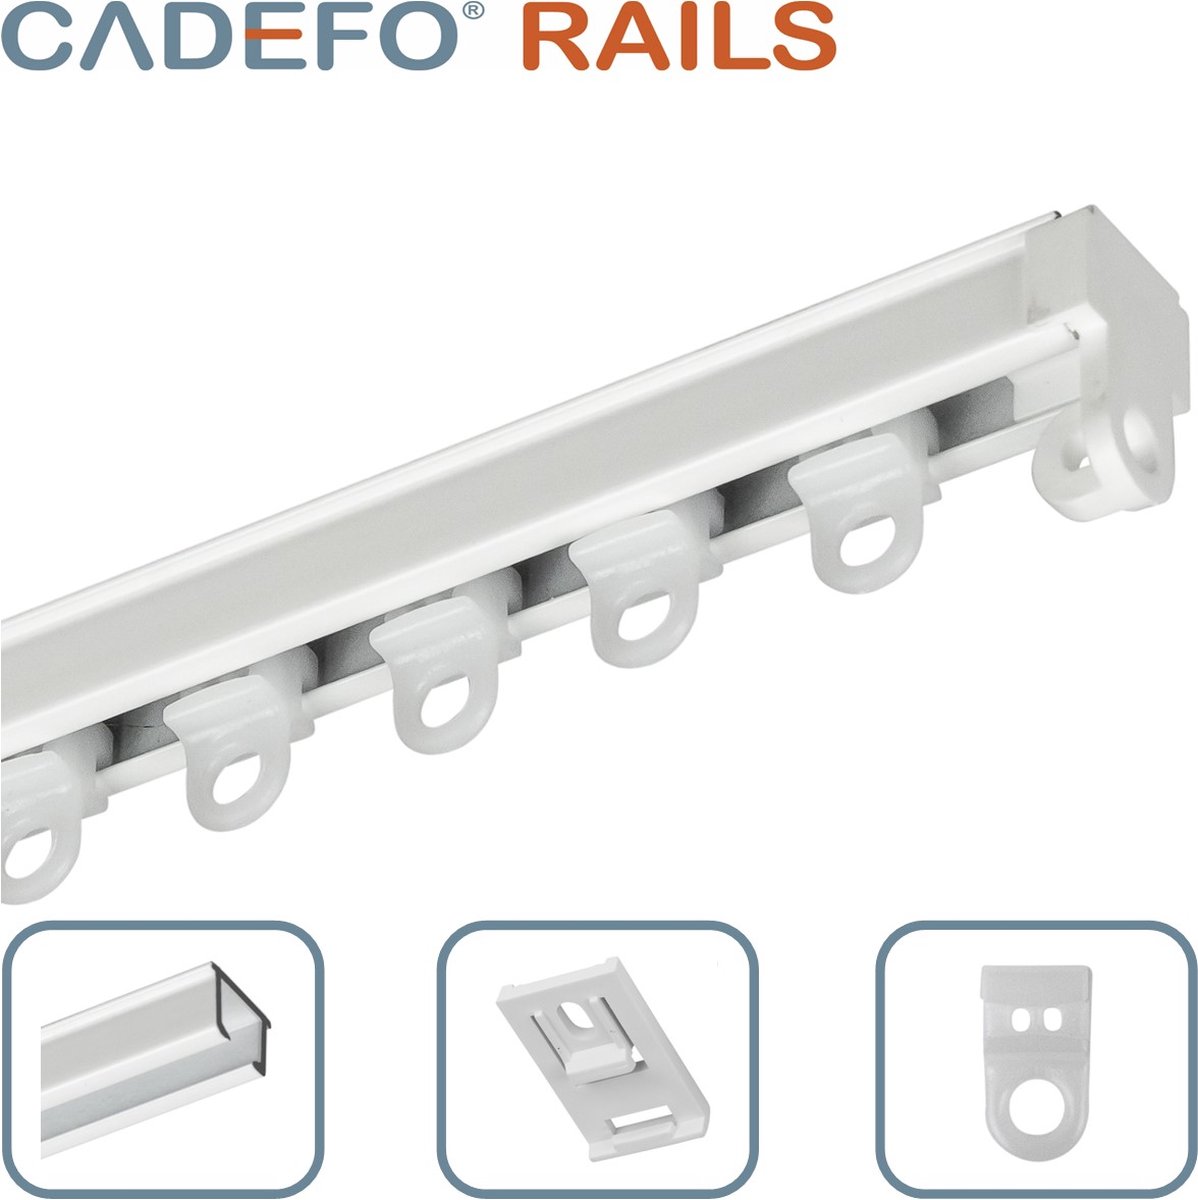 CADEFO RAILS (251 - 300 cm) Gordijnrails - Compleet op maat! - UIT 1 STUK - Leverbaar tot 6 meter - Plafondbevestiging - Lengte 257 cm